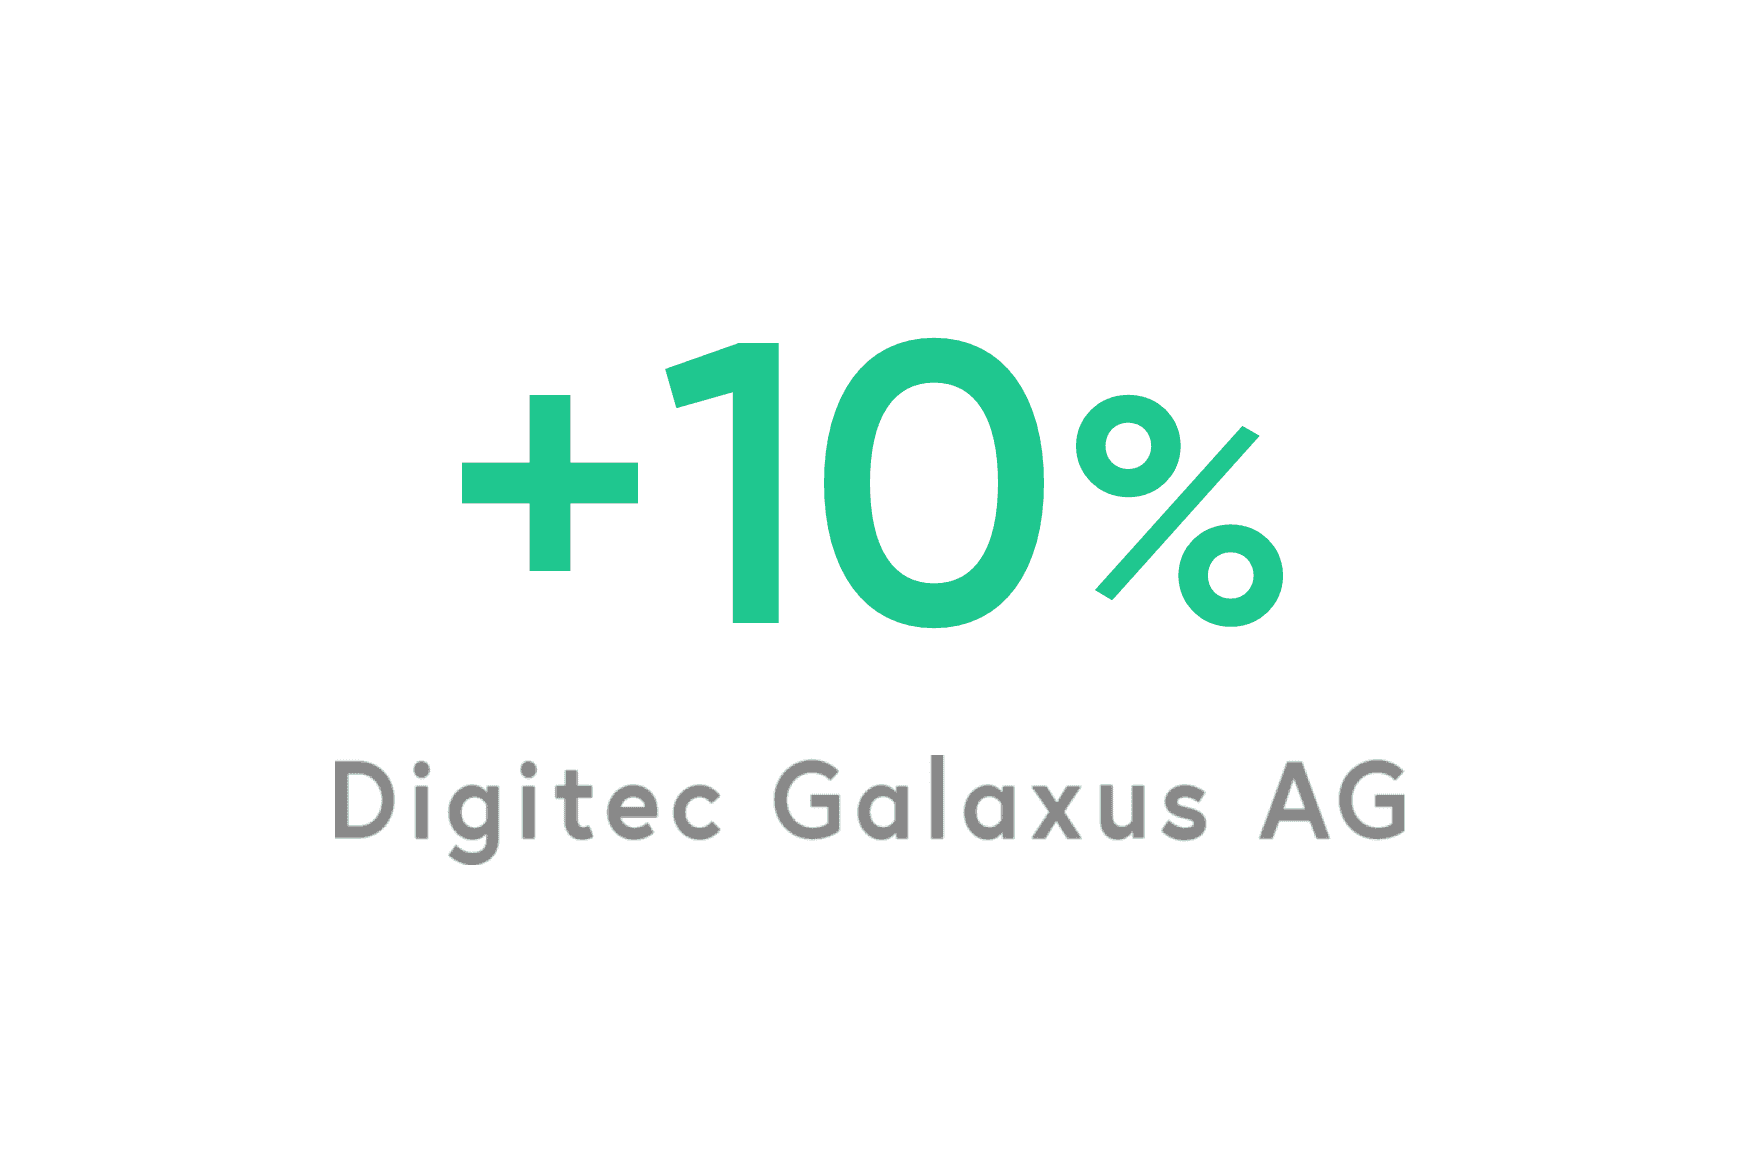 Digitec Galaxus: miglioramento del 10% per quanto riguarda il morale degli agenti